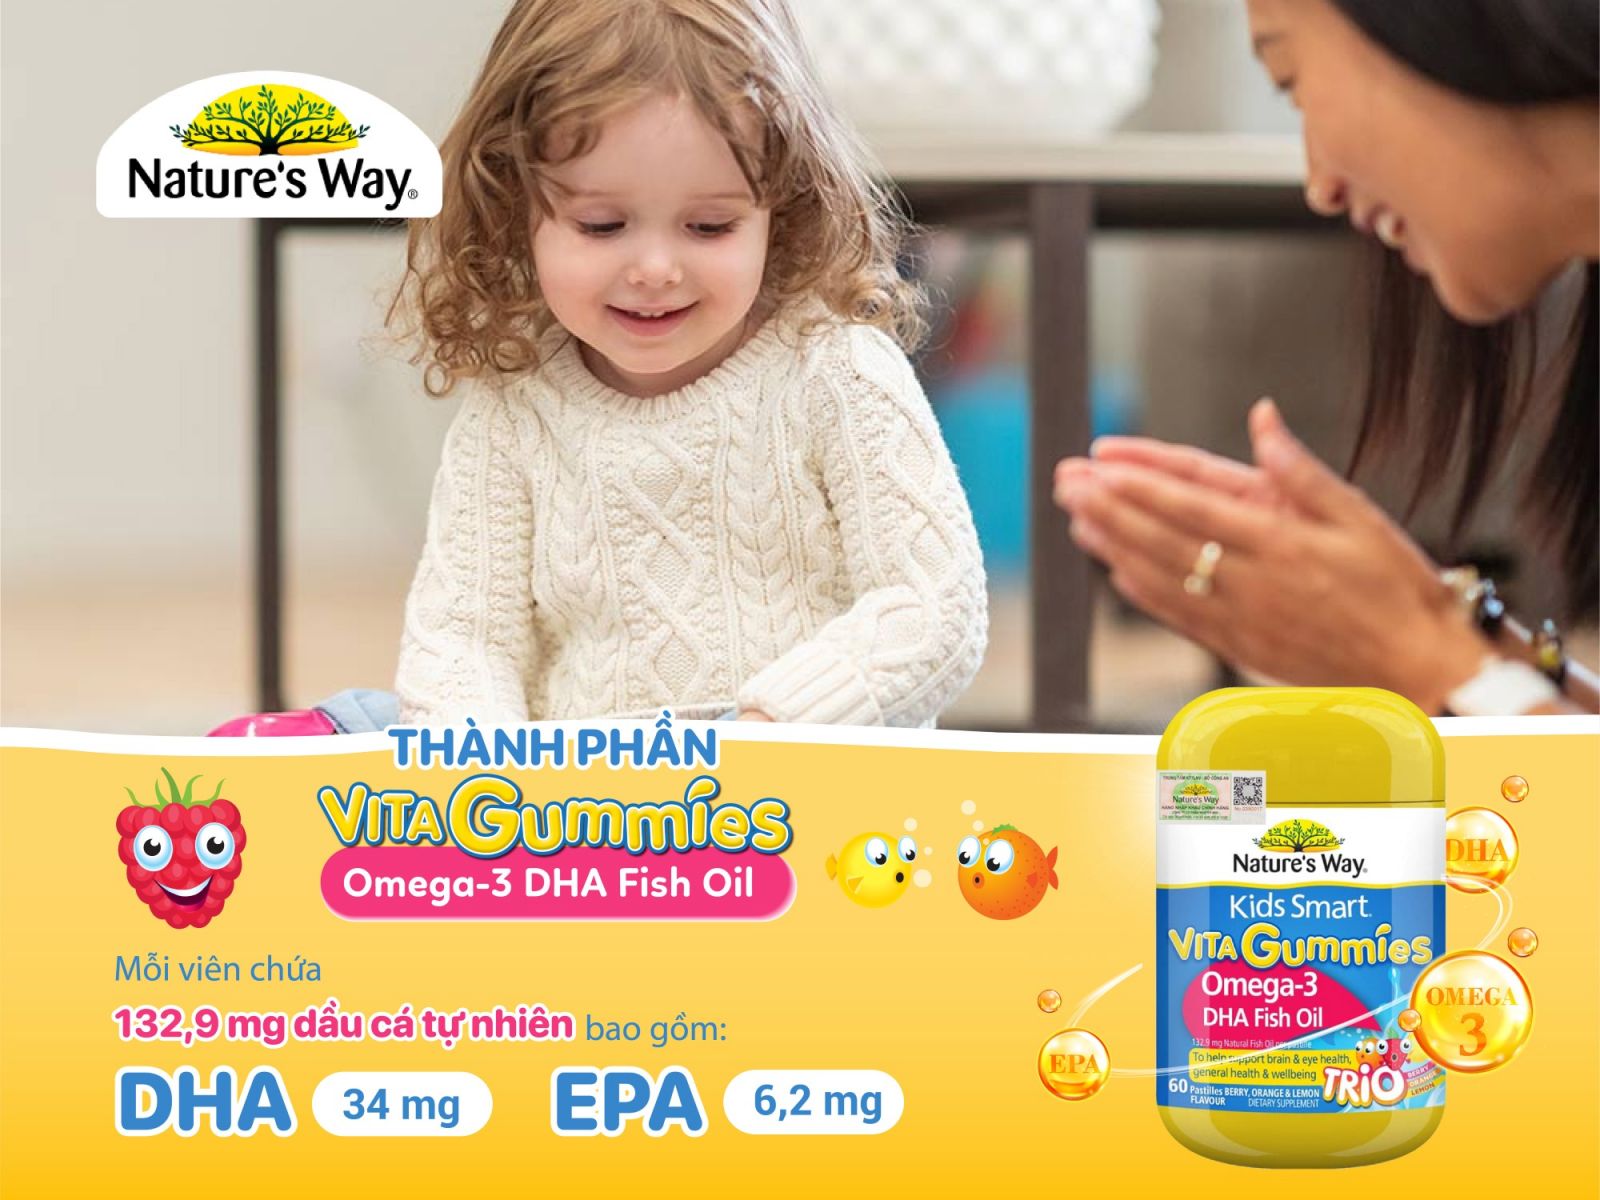 Natures Way Kids Smart Vita Gummies Omega-3 DHA Fish Oil Trio - Hỗ trợ phát triển não bộ và thị lực cho bé